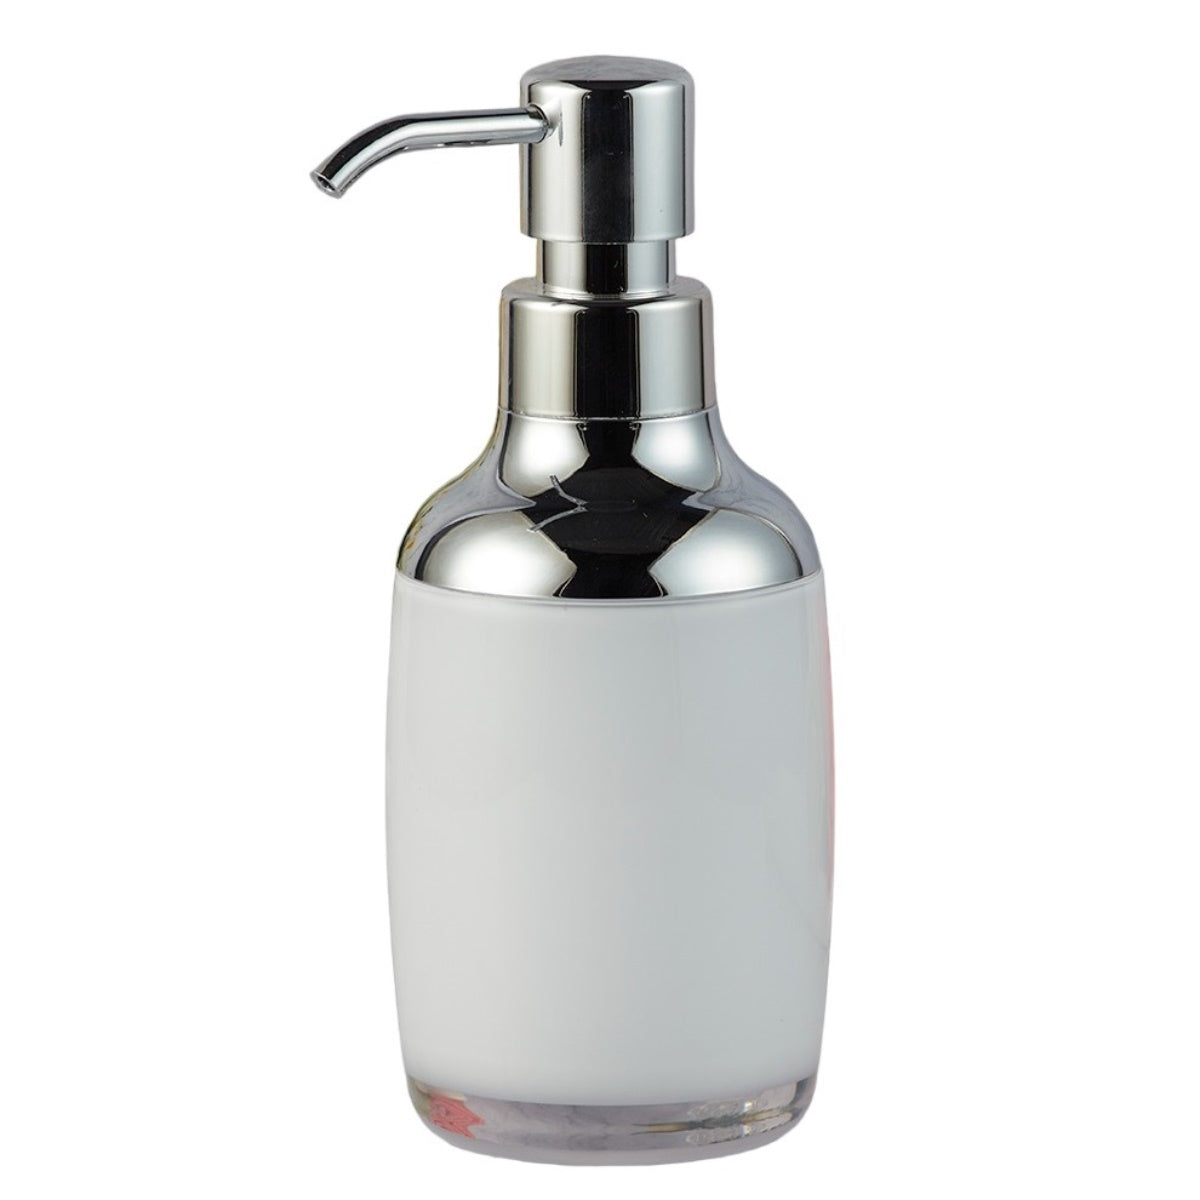 Acrylic Soap Dispenser Pump for Bathroom for Bath Gel, Lotion, Shampoo (9935)